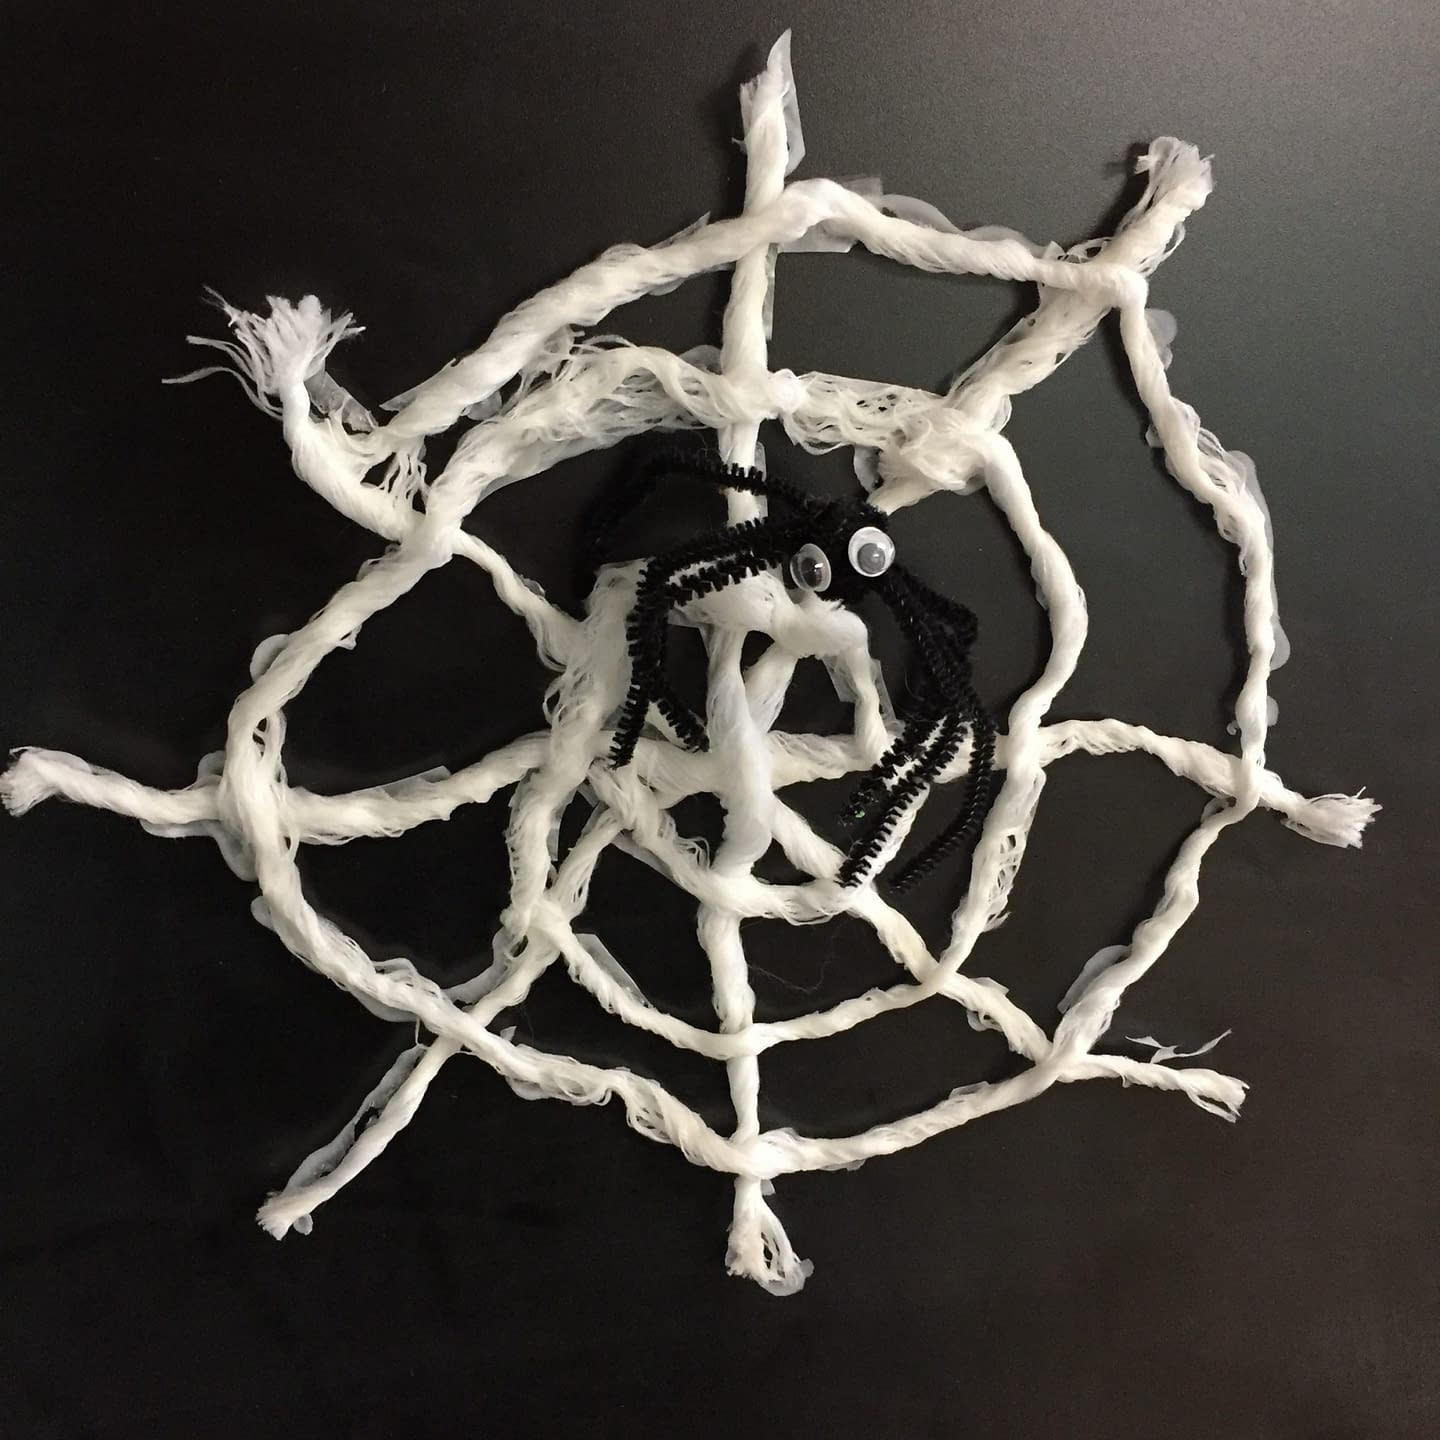 Spider Web Craft - Halloween craft ideas for kids